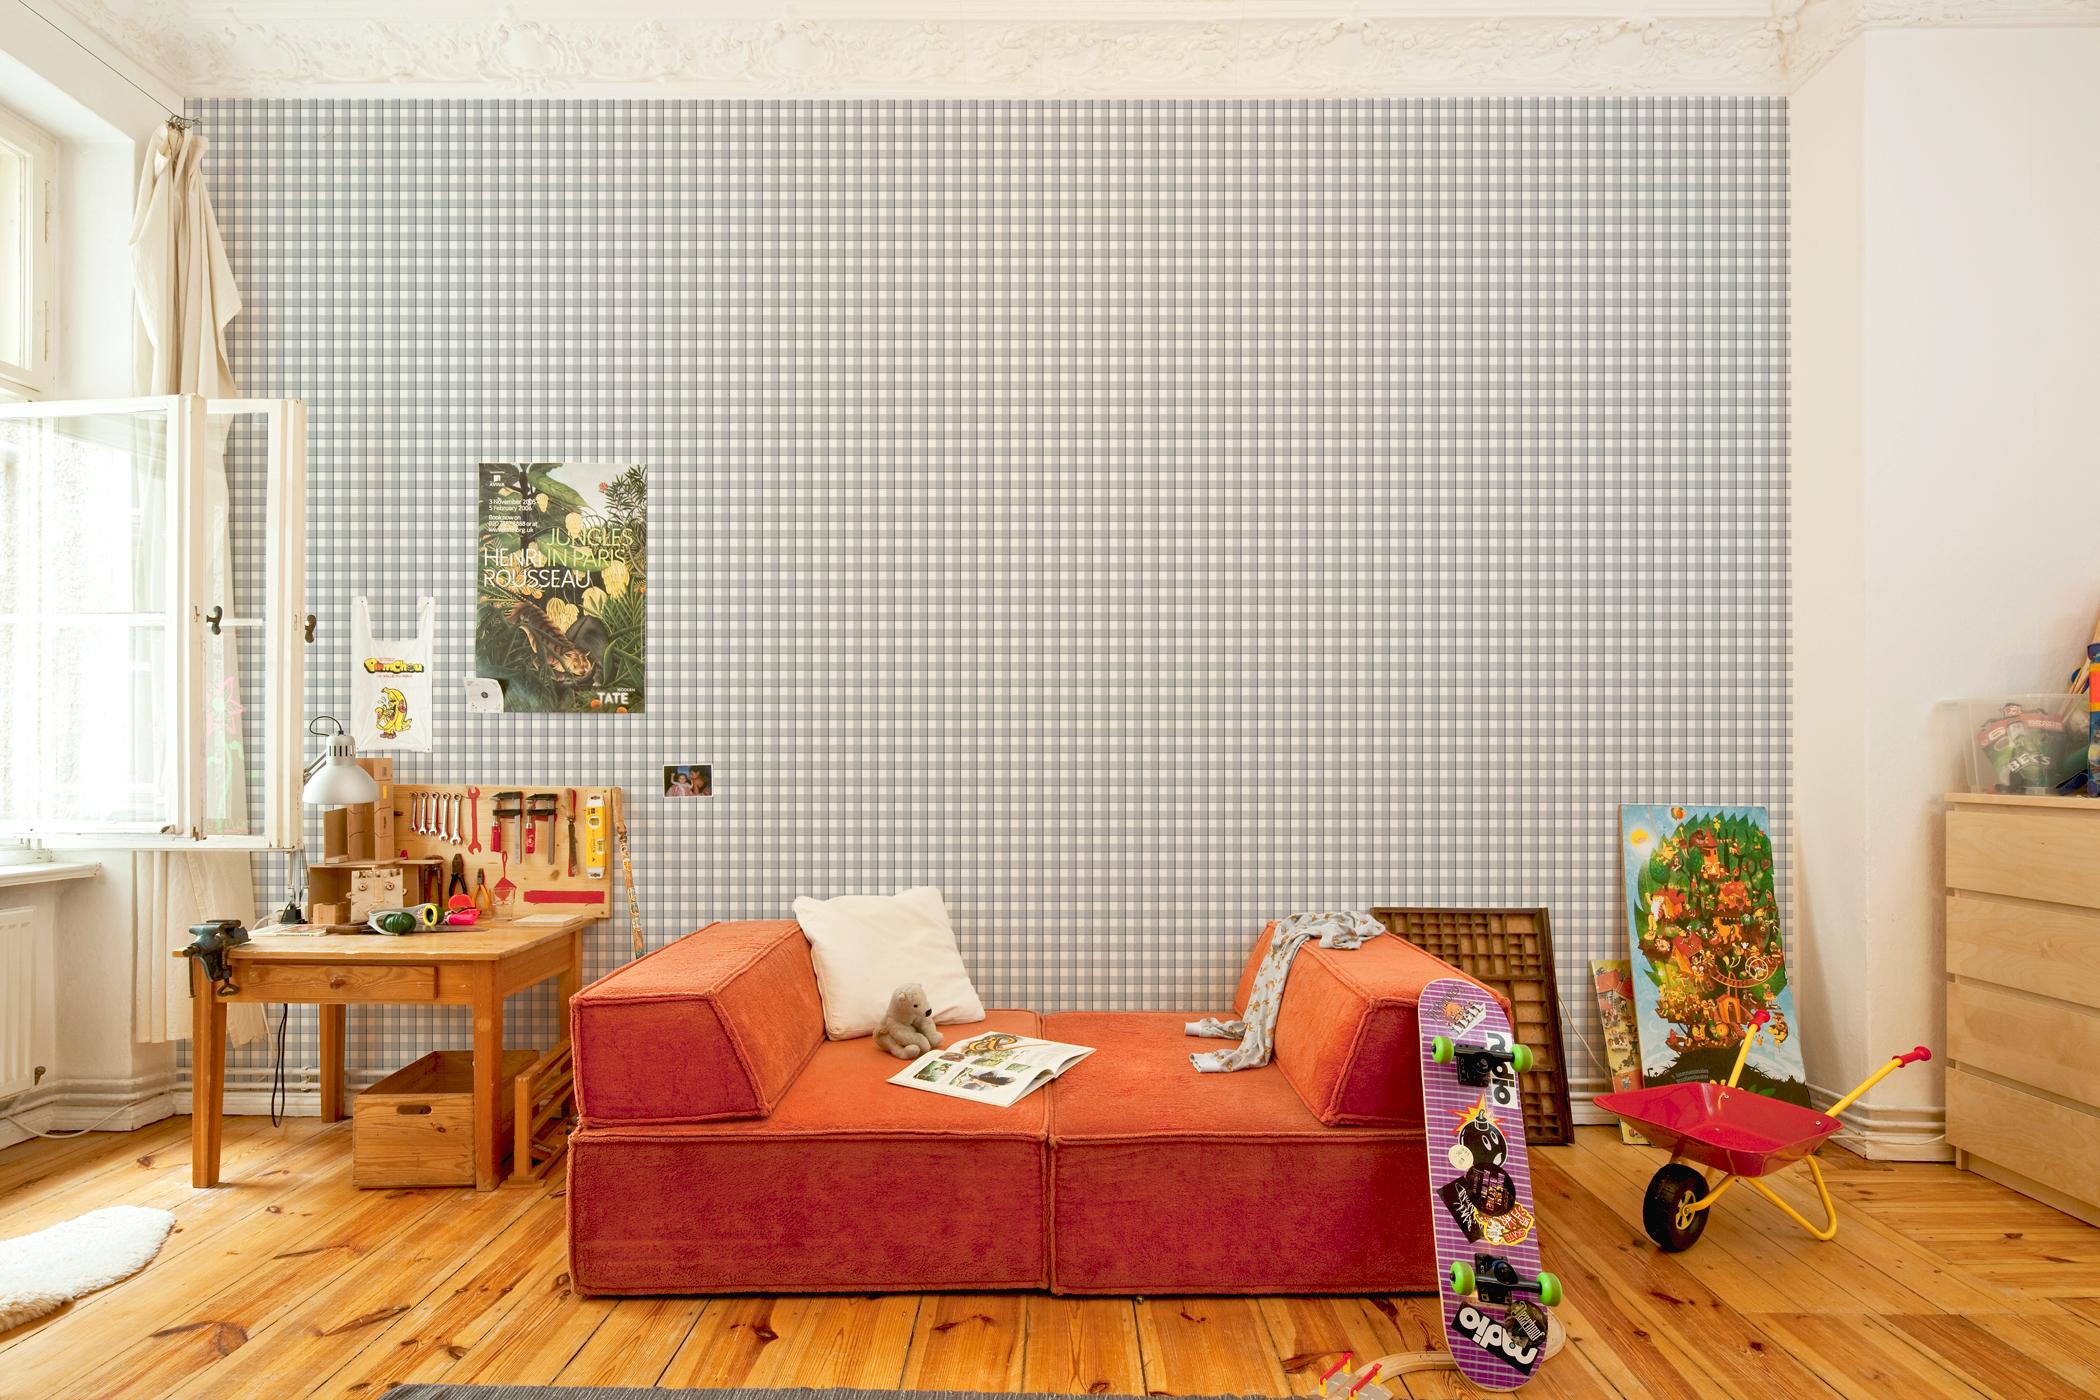 Kuschelecke für's Kinderzimmer #sideboard #sofa #rotessofa #werkbank ©Extratapete